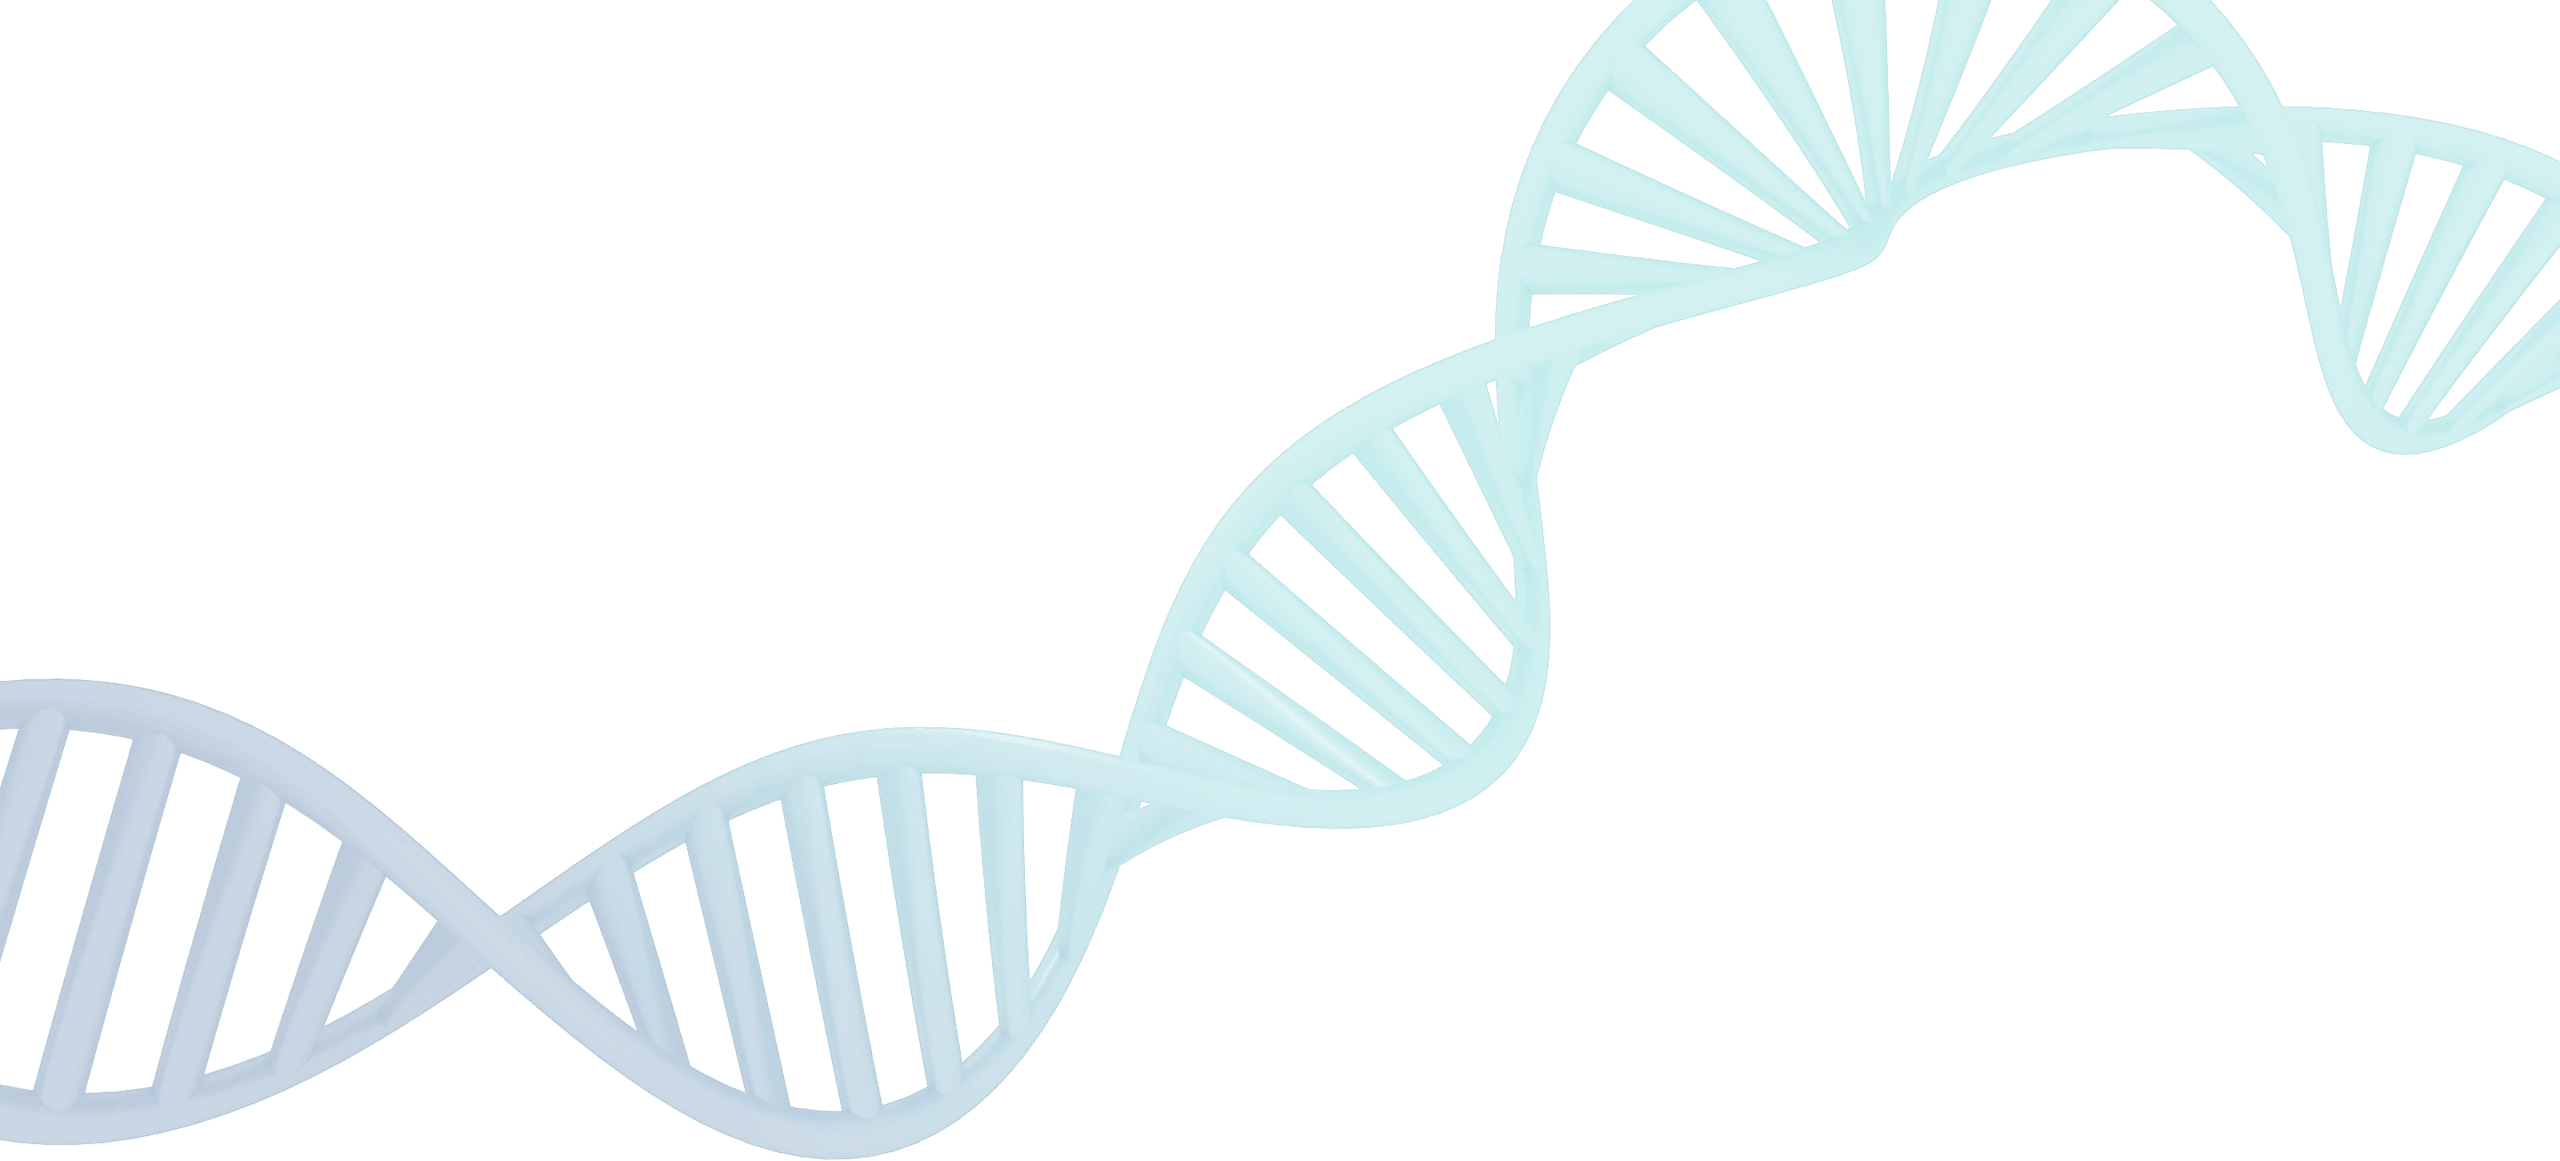 Transparent DNA Image - Blue